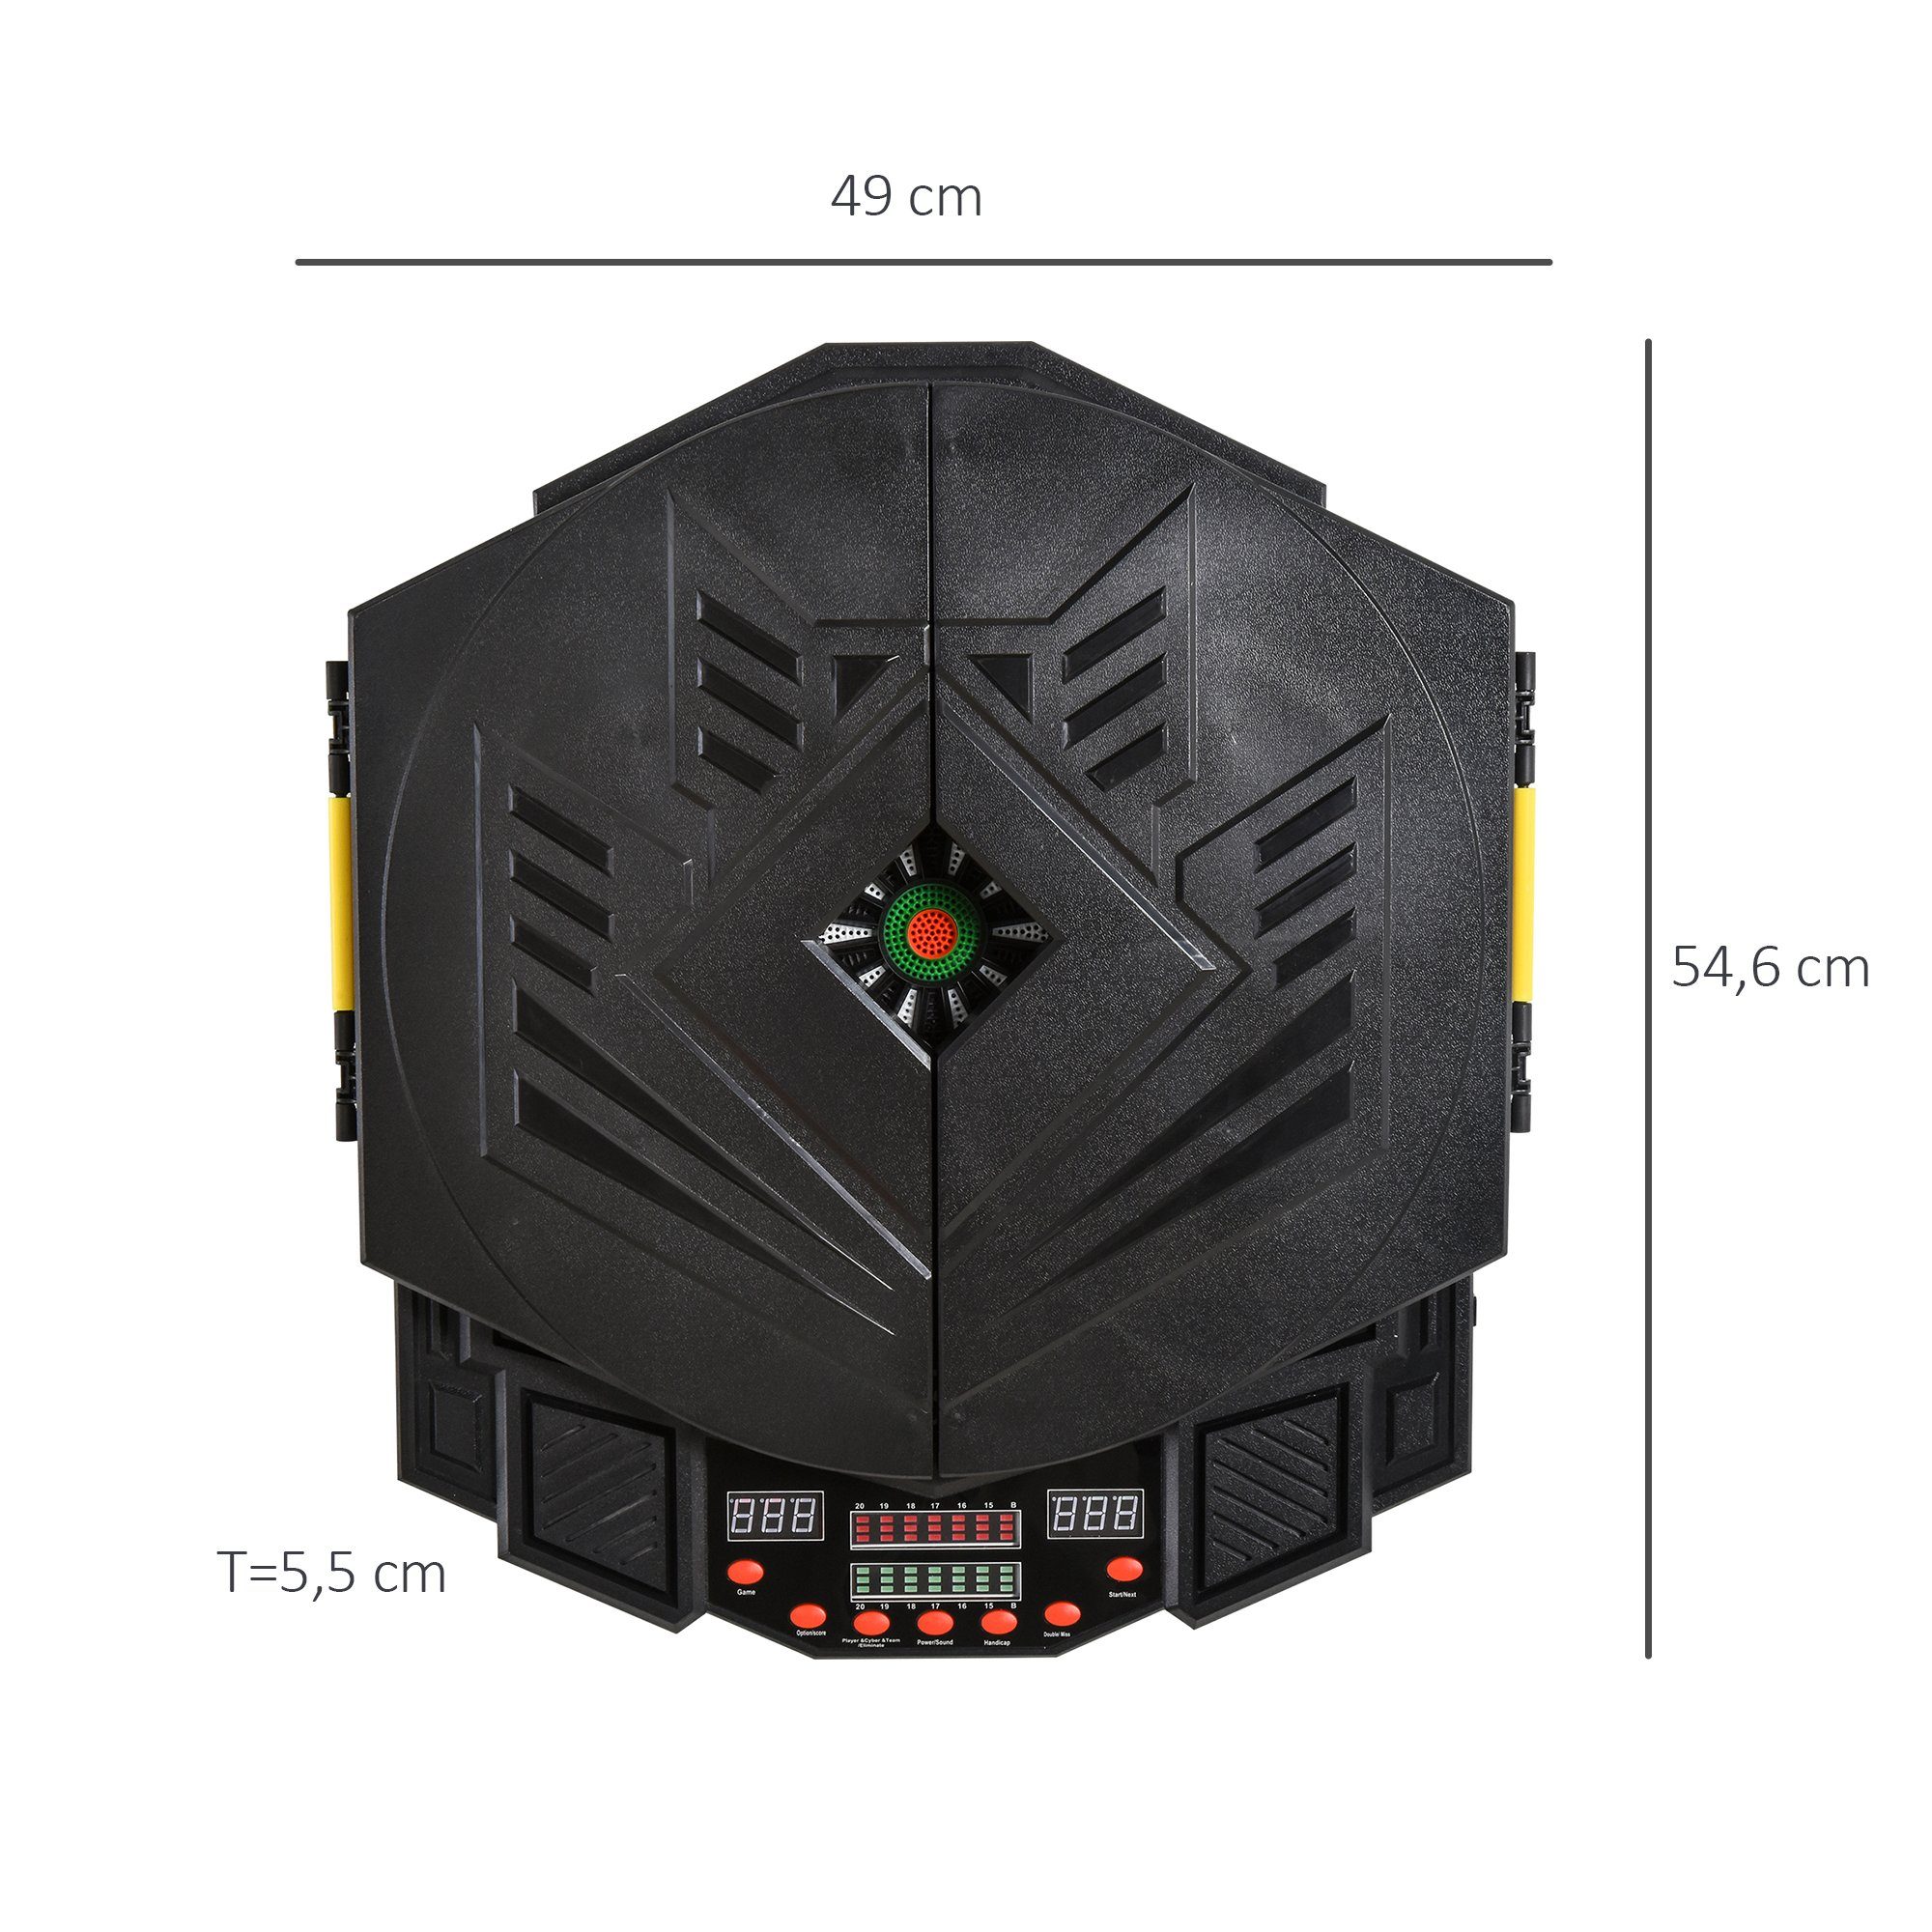 HOMCOM Dartscheibe Elektronische, (Set, 49L cm LED Tür 54.6B x x Anzeige mit 5.5D Soundeffekte)